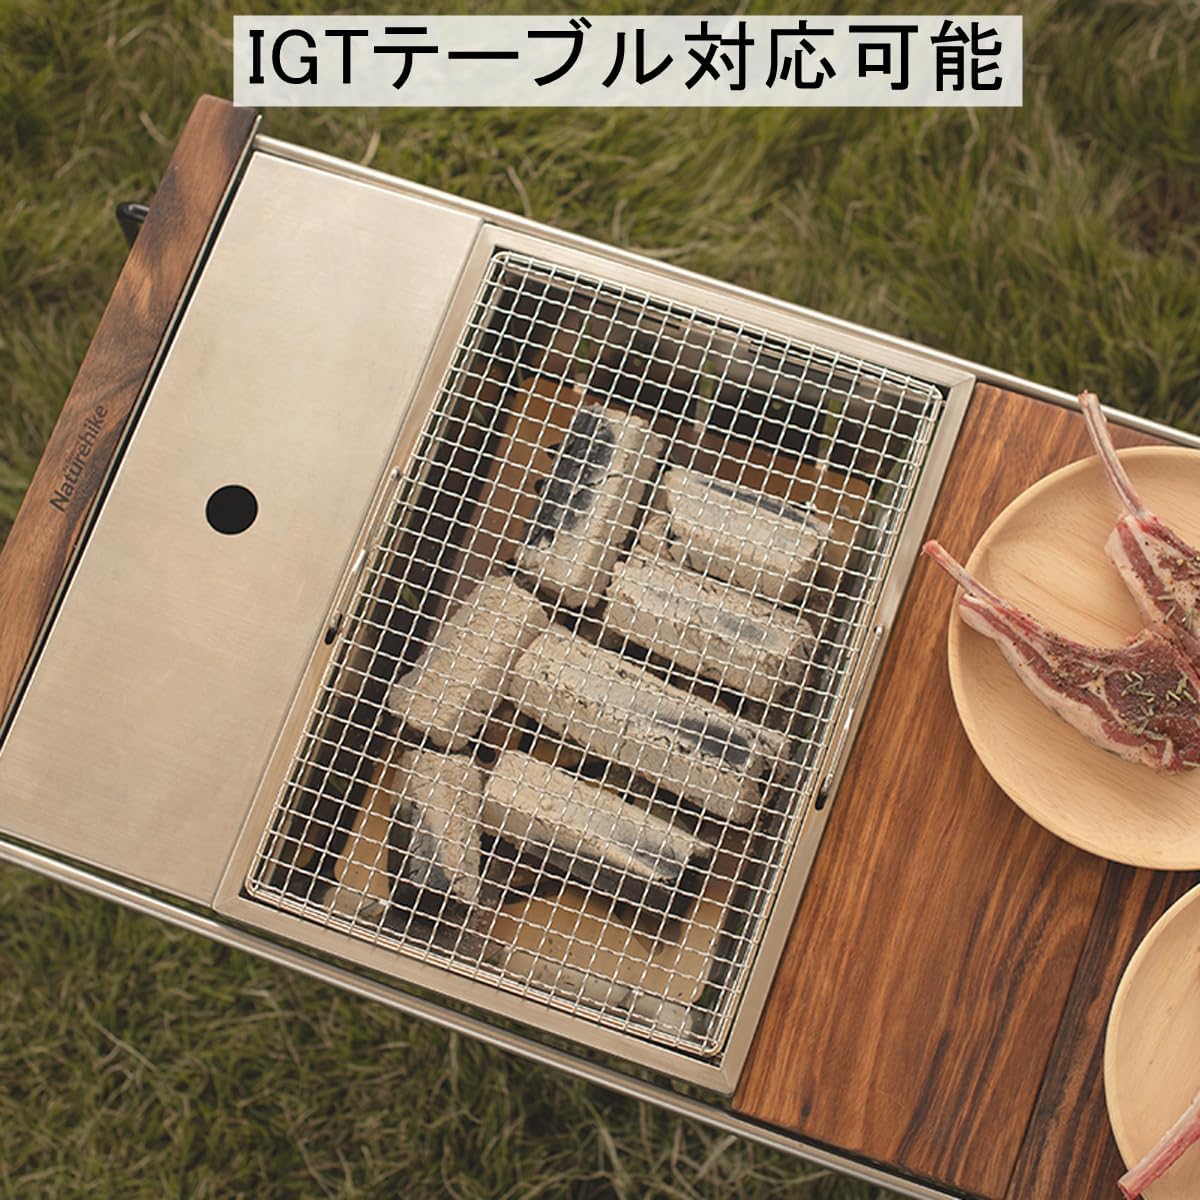 バーベキューコンログリル IGT 対応 1ユニット 炭焼きグリル BBQコンロ 